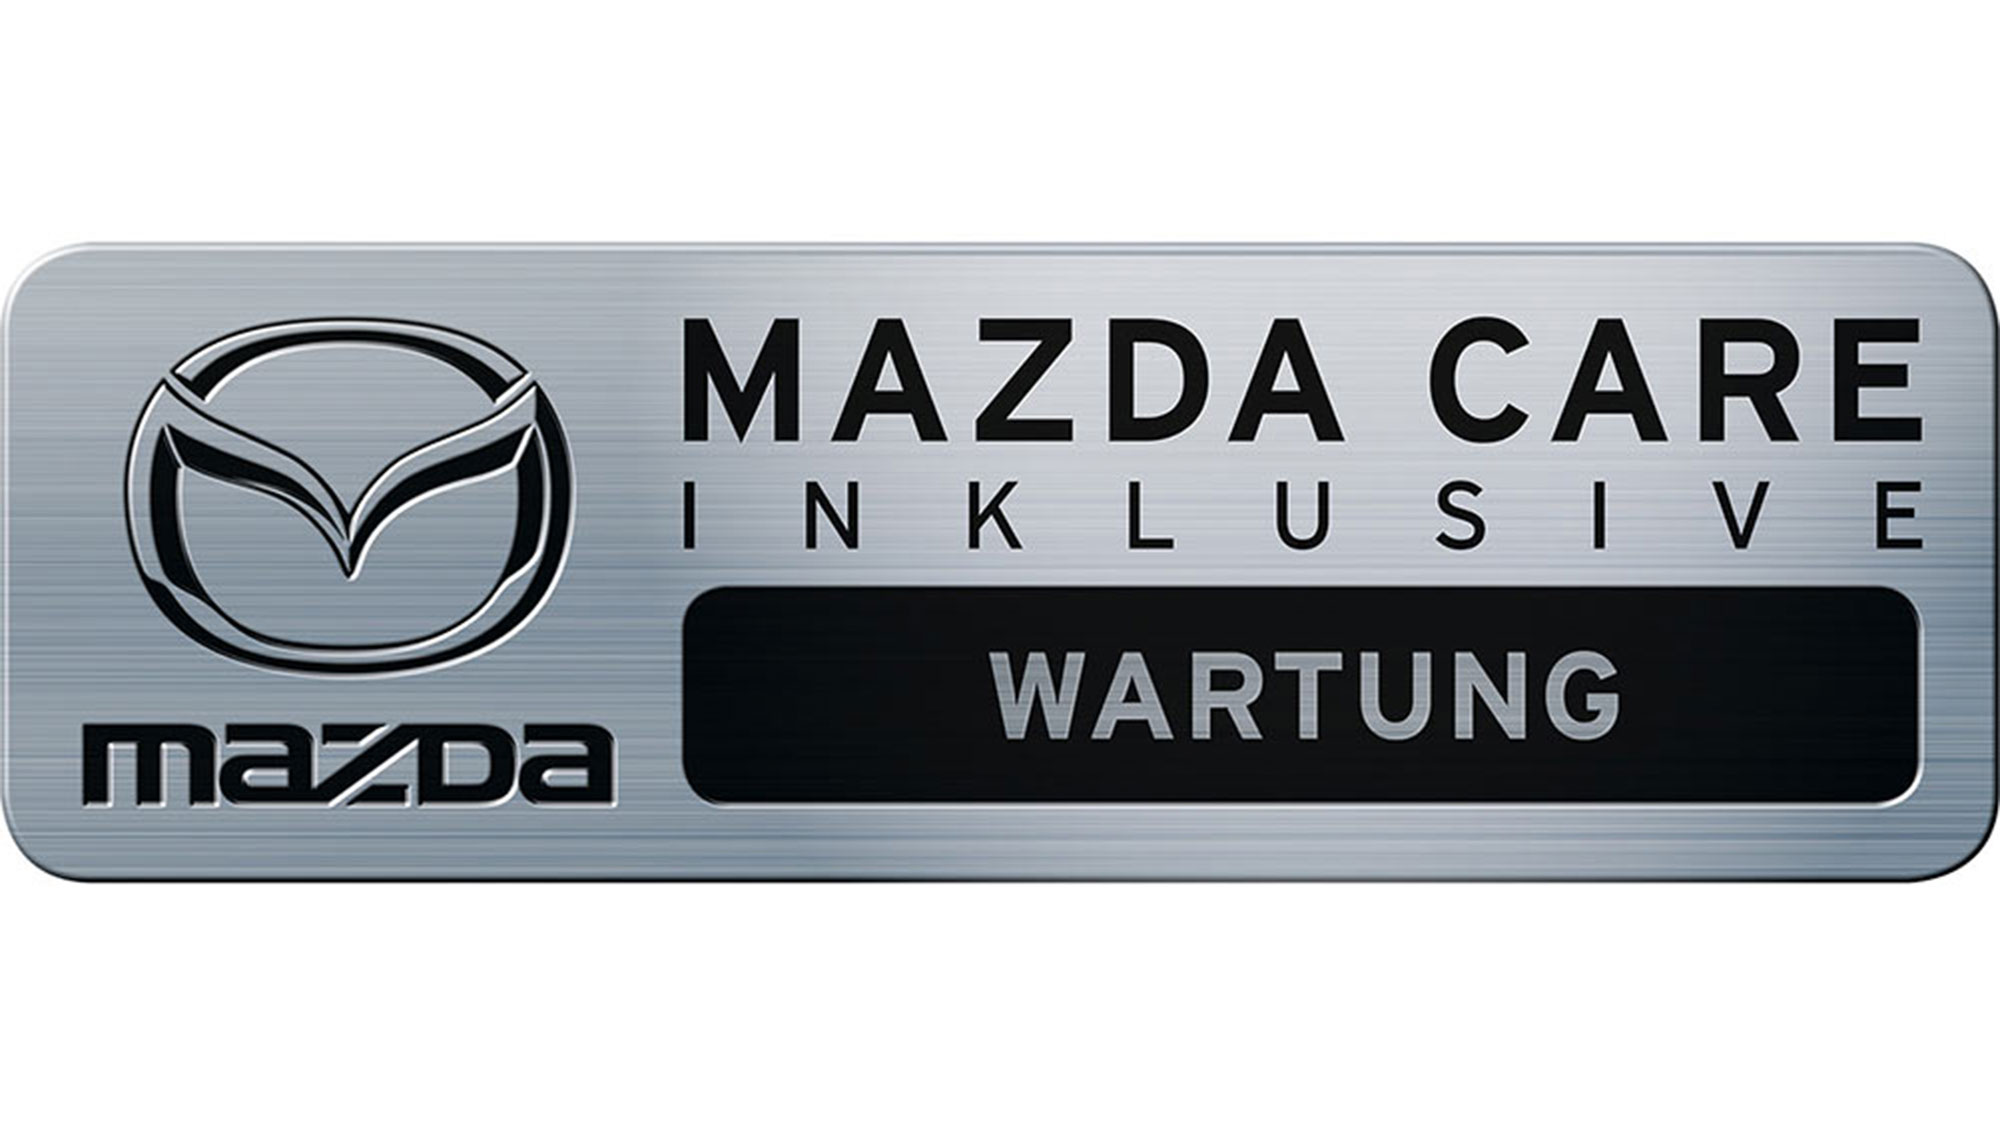 Mazda Care